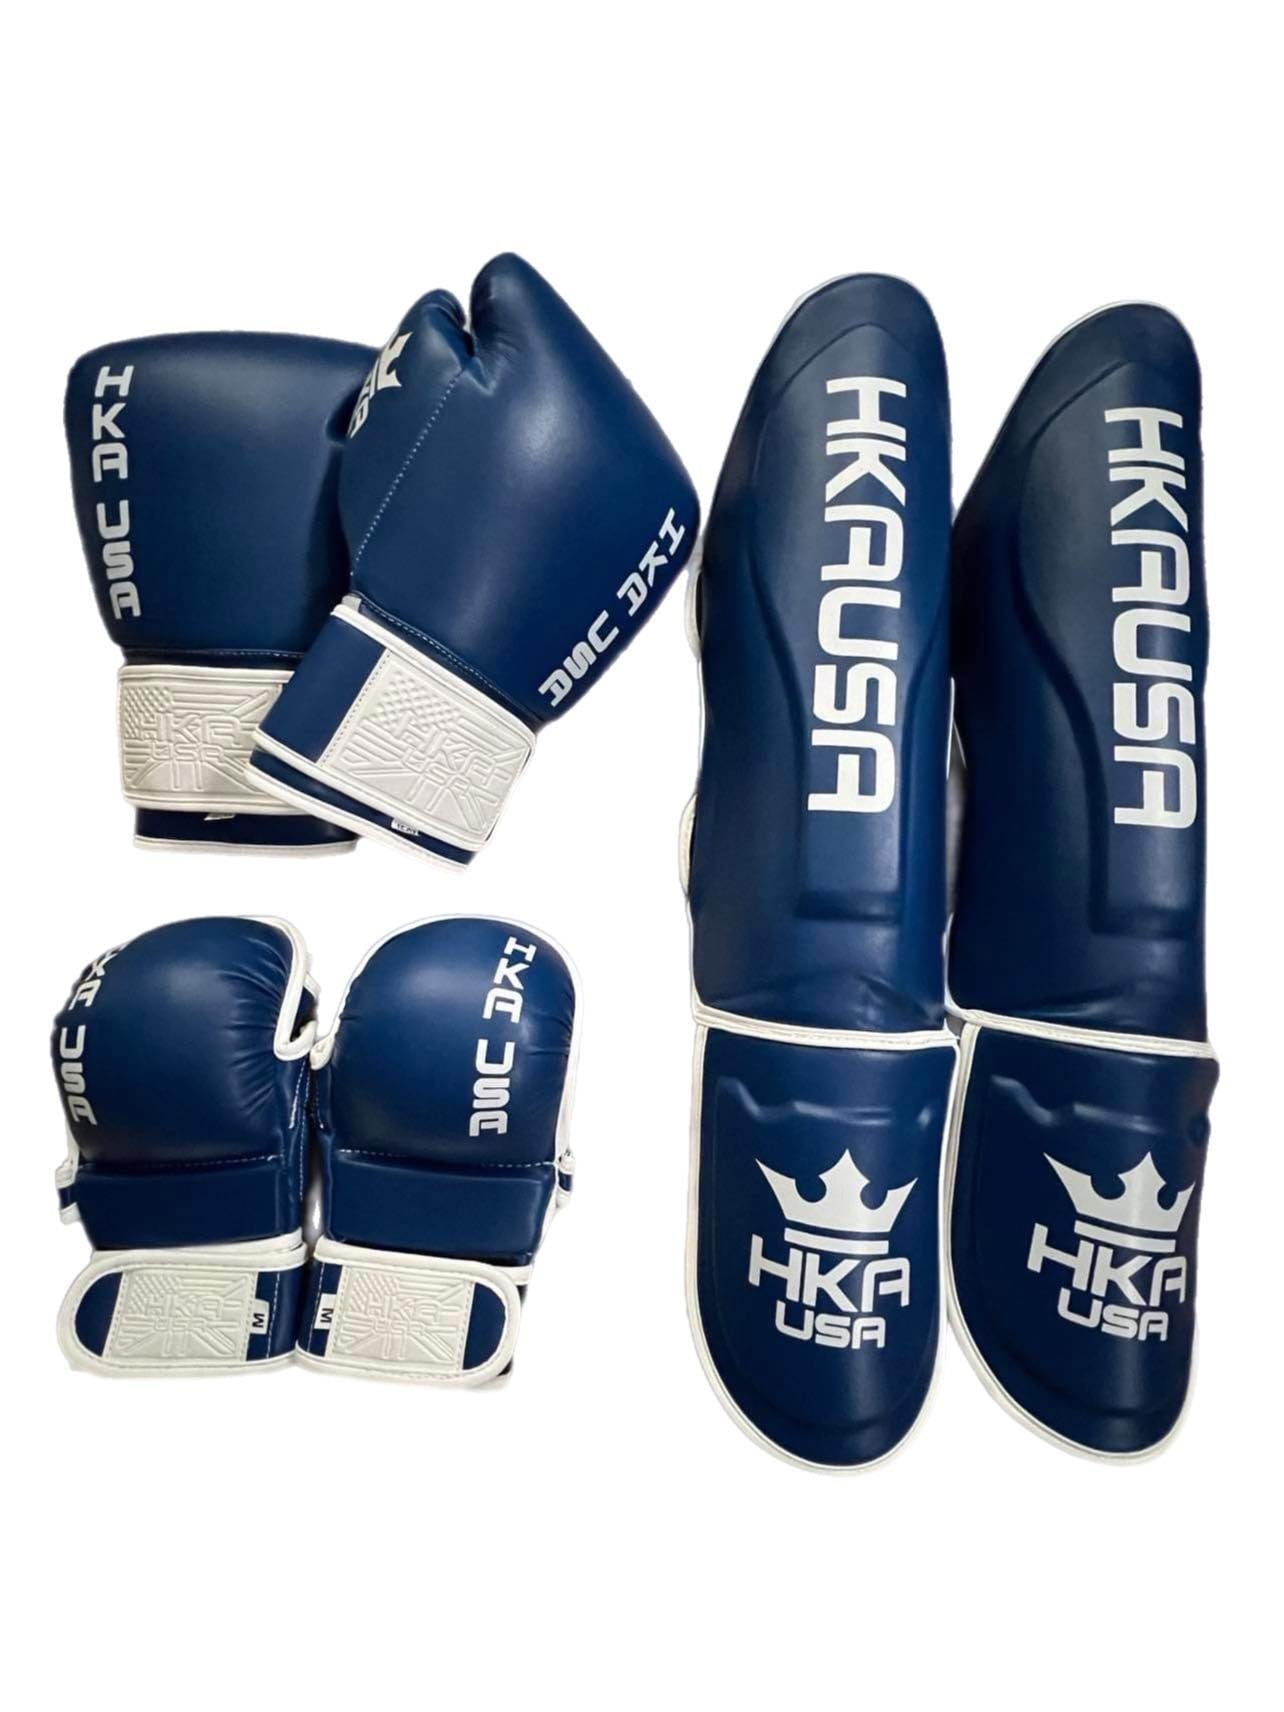 Starter line MMA Sparring Gloves-Royal Blue